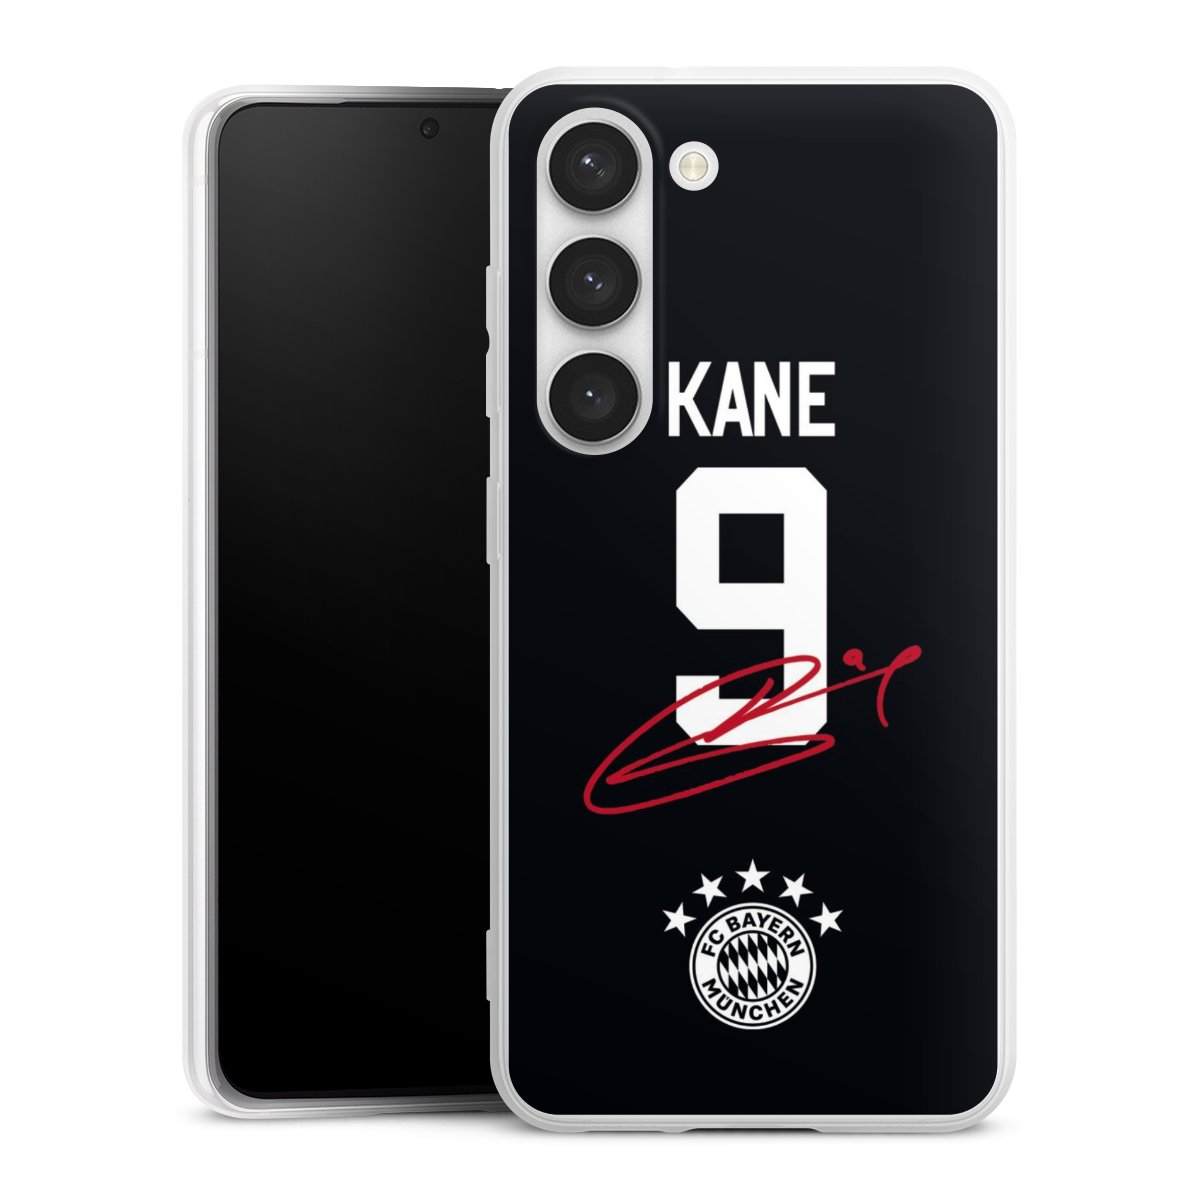 Kane 9